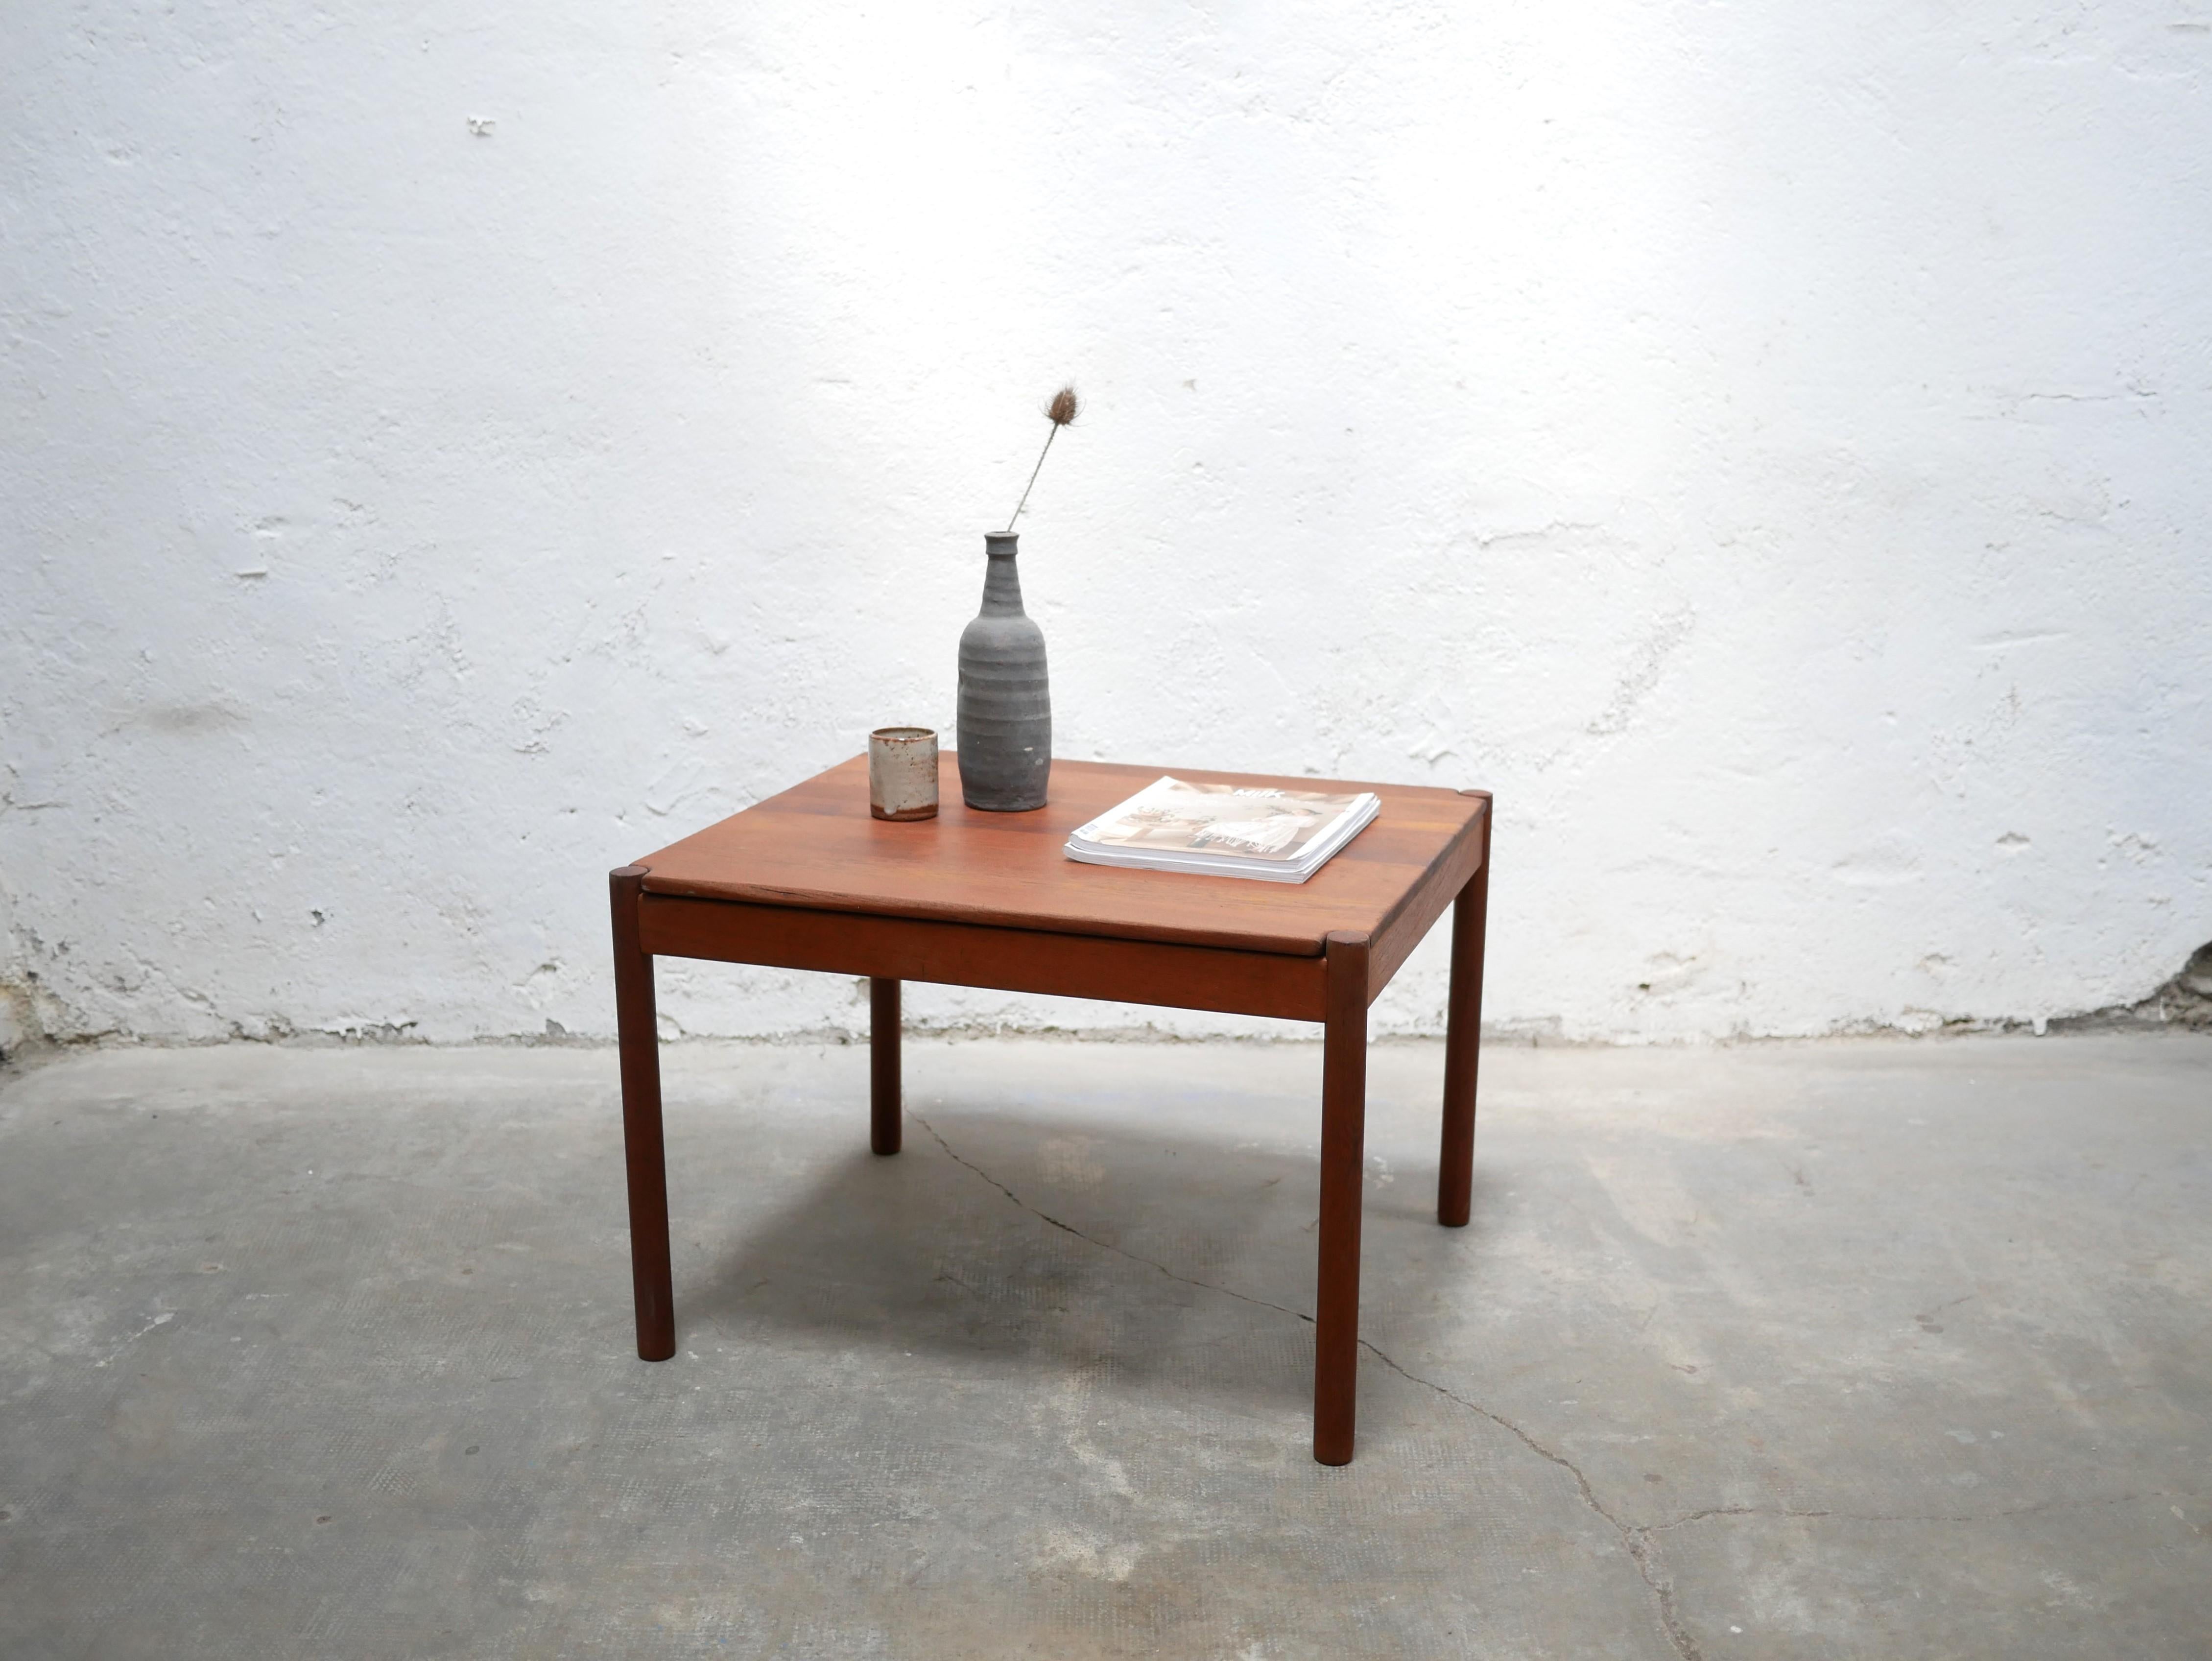 Table basse en teck produite au Danemark par Magnus Olesen A/S Durup dans les années 1960.

Ses lignes simples et harmonieuses et sa couleur lumineuse lui apportent beaucoup de charme et de douceur.
Il sera parfait dans le salon, dans une décoration